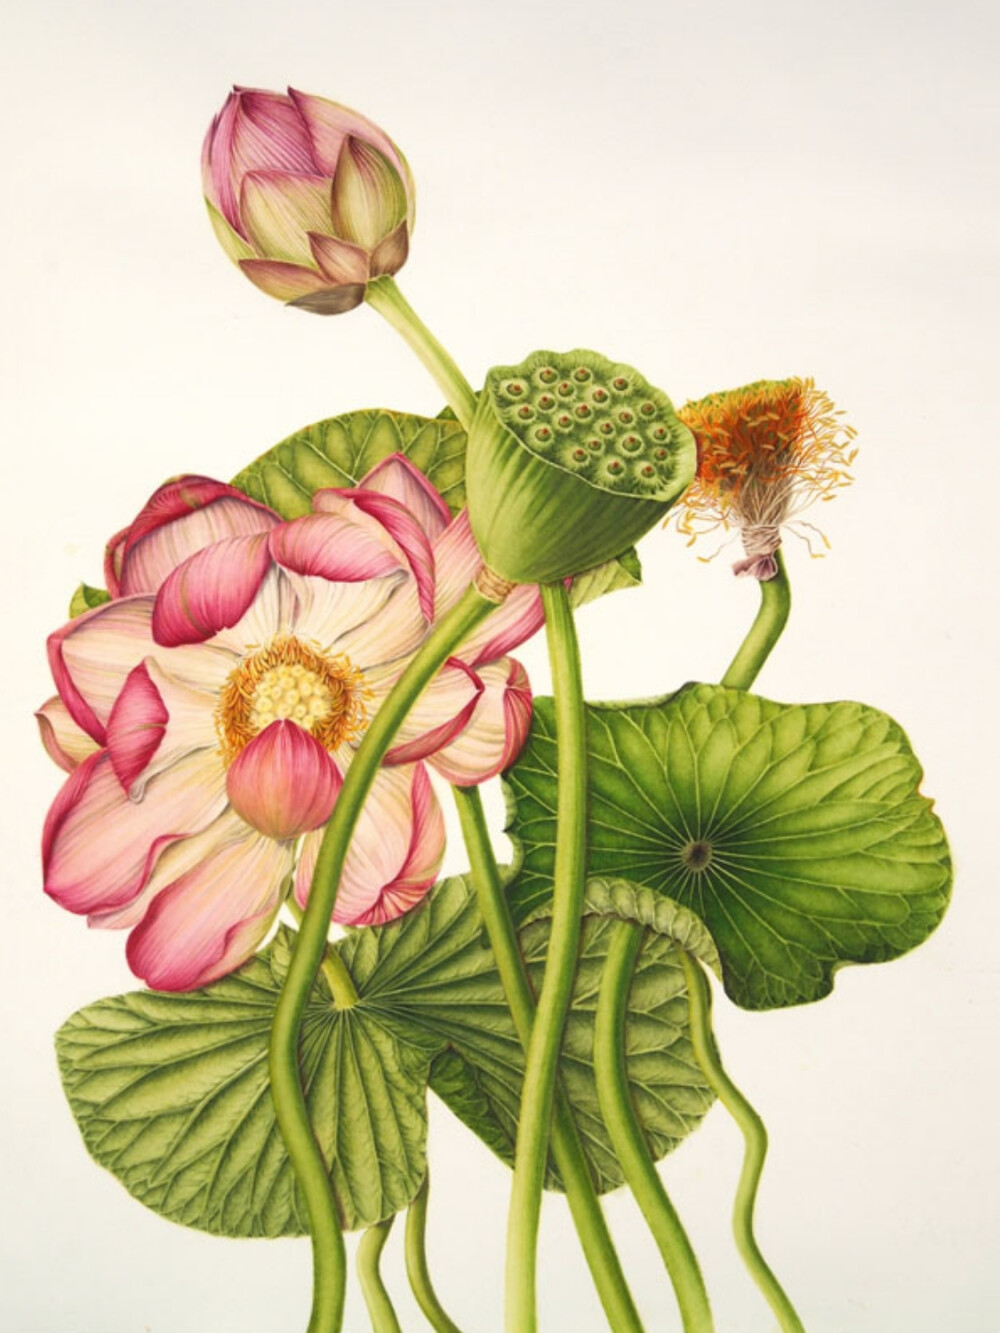 milly acharya的手绘植物图谱——Nelumbo nucifera（共收录56张）（画家主页：http://botanix.org/）